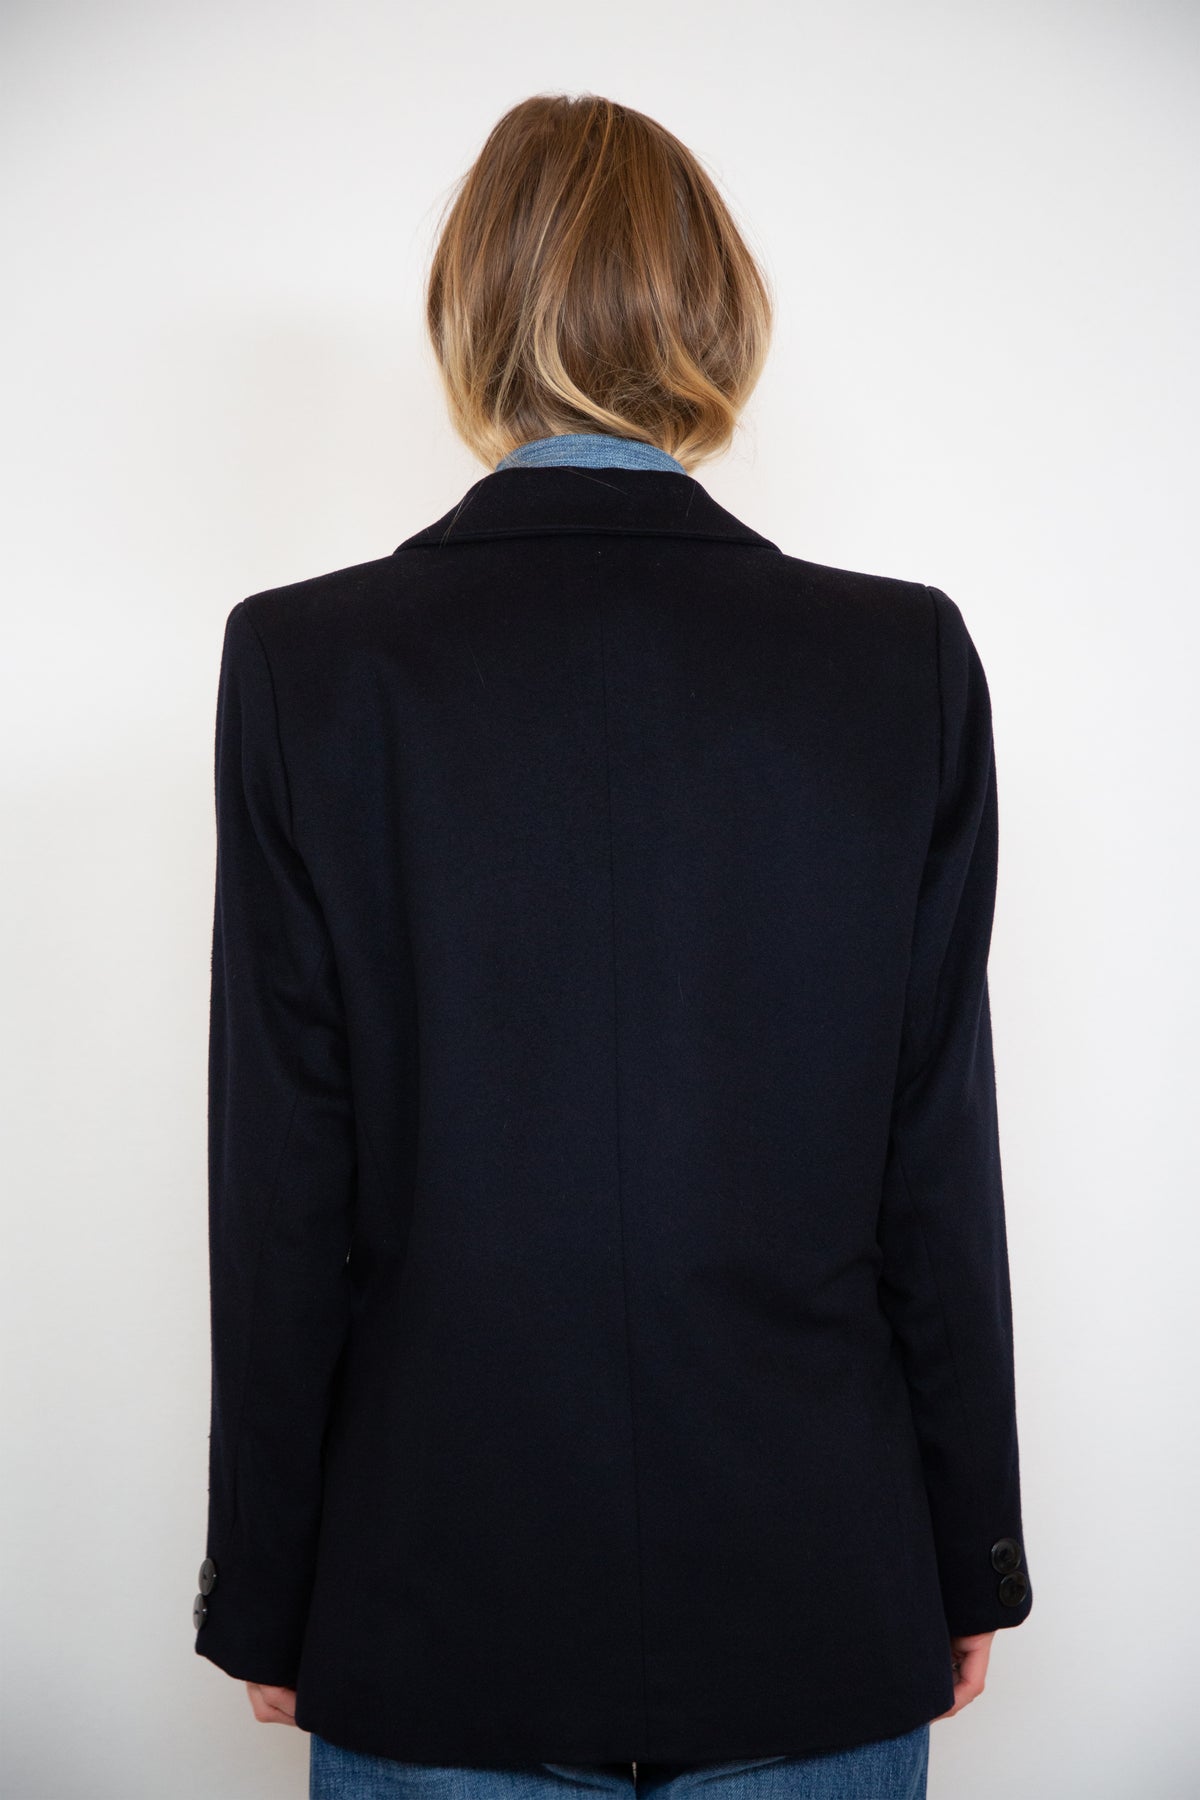 Yves Saint Laurent blazer